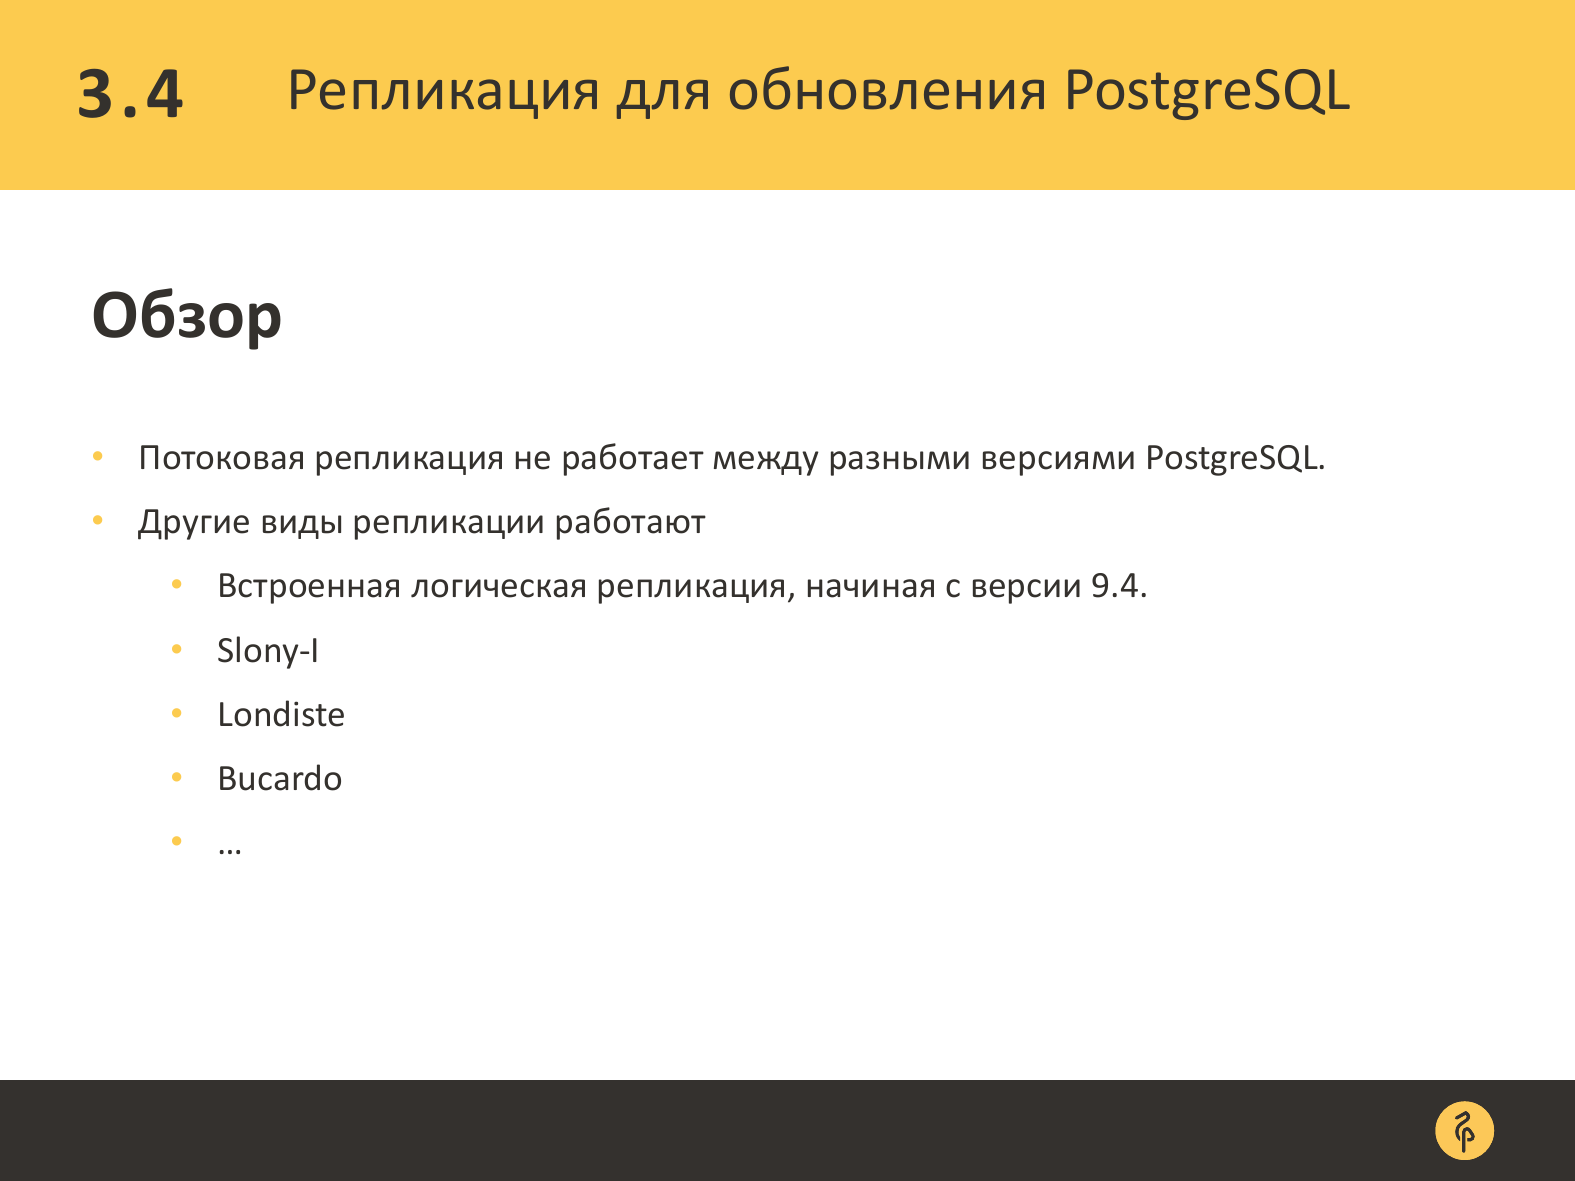 Практика обновления версий PostgreSQL. Андрей Сальников - 24